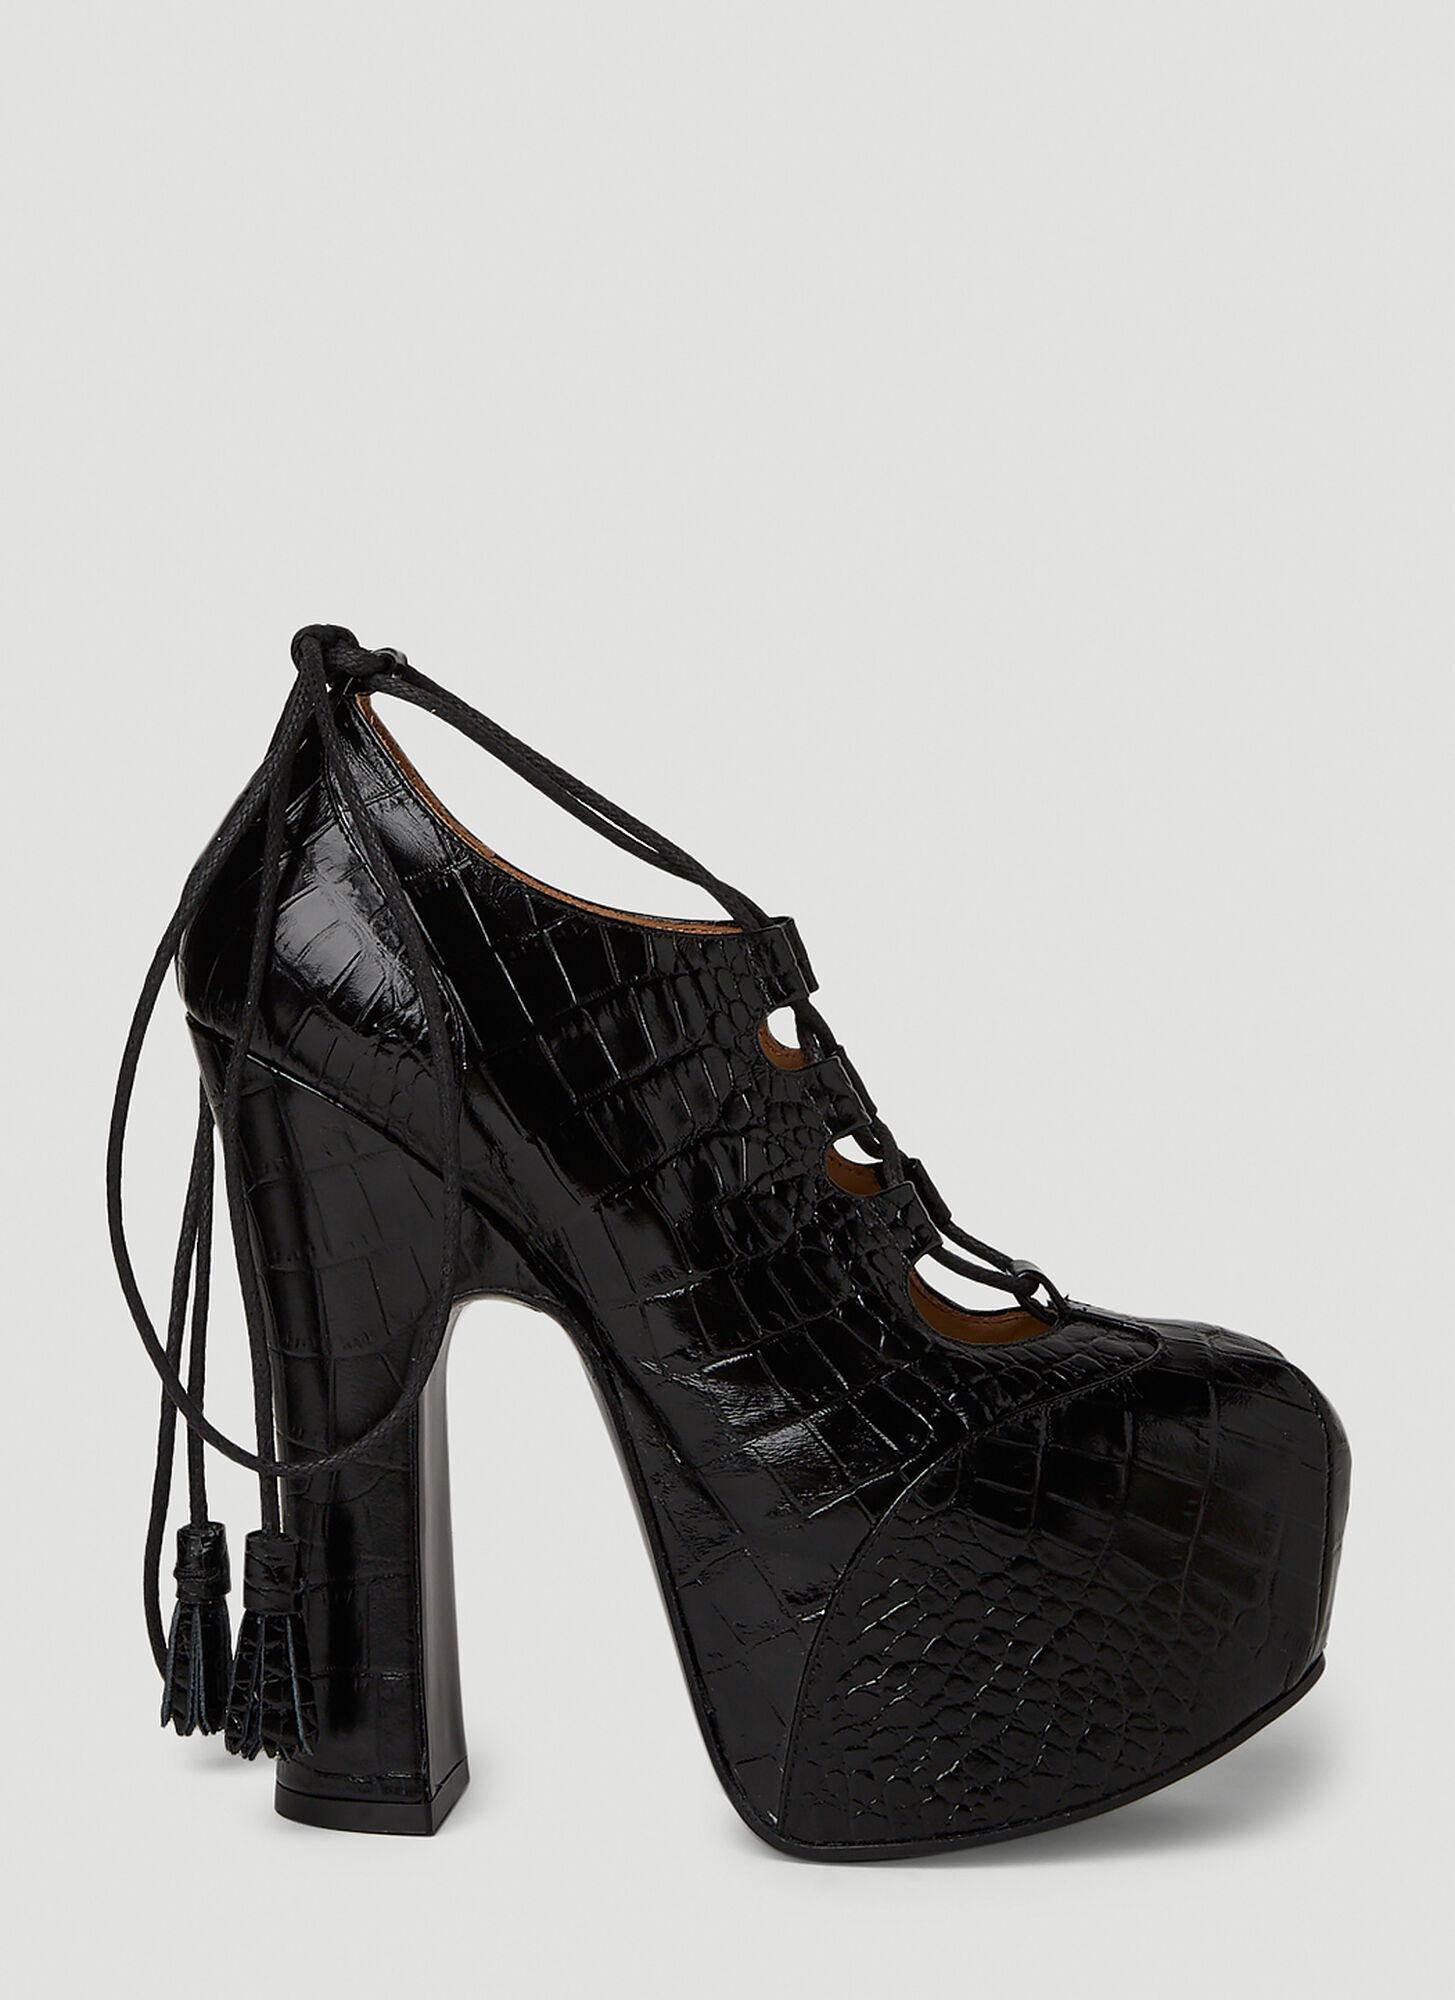 Vivienne Westwood Elevated Ghillie Platform Heels in Black | Lyst